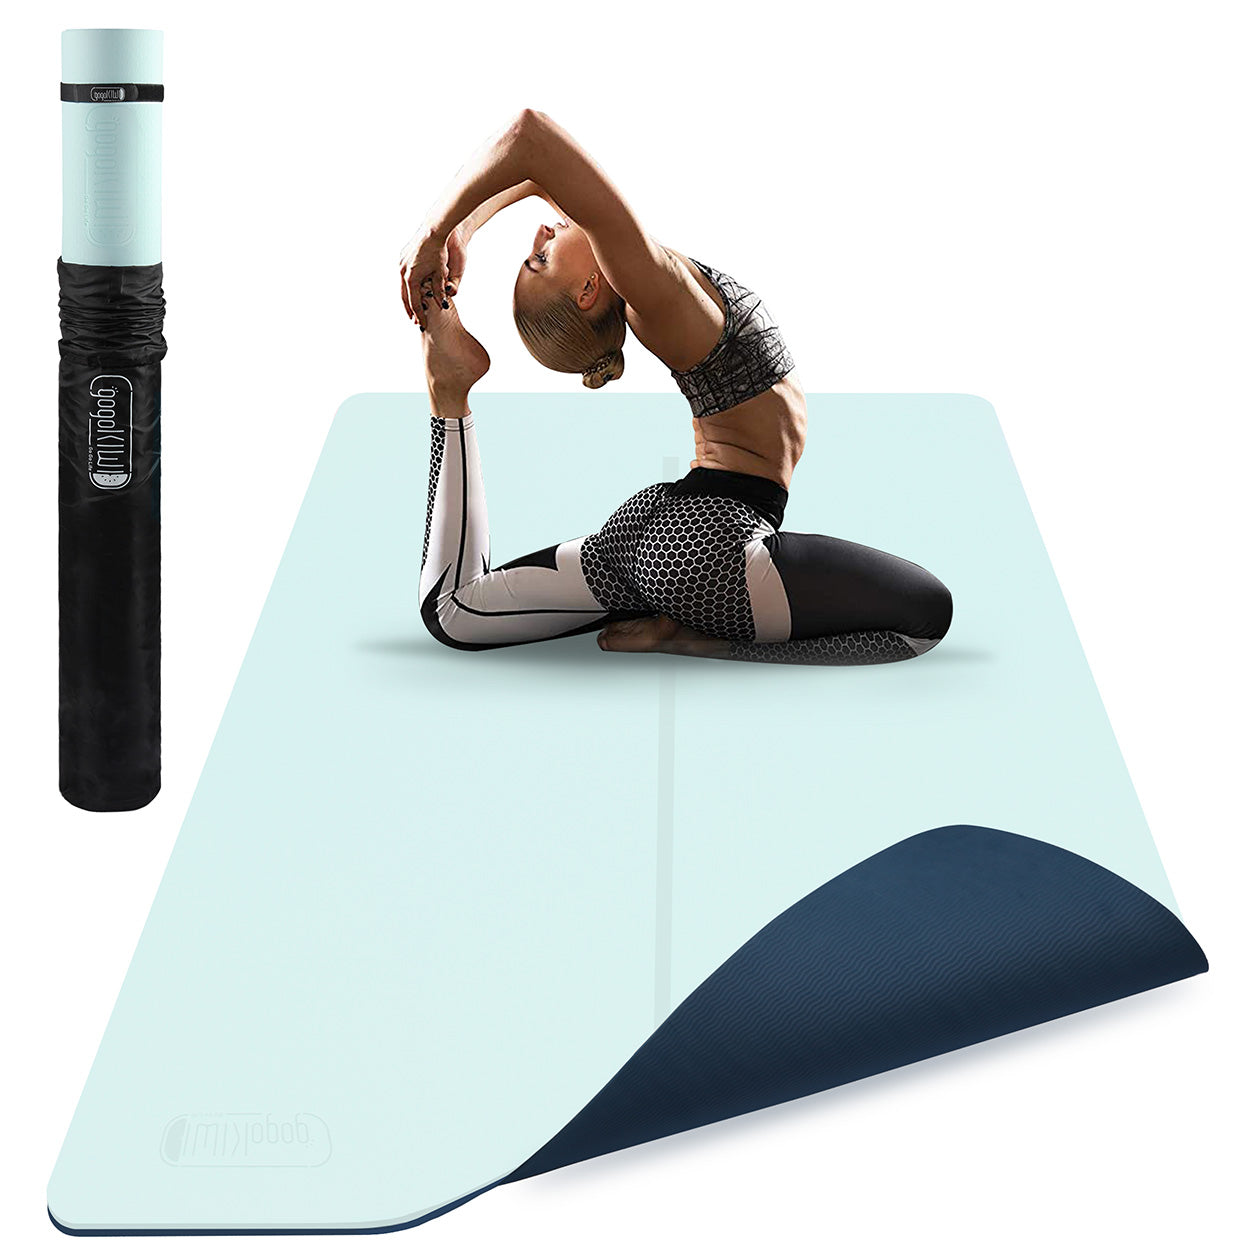 Tapete de Yoga Ecológico 10mm Ejercicio Confortable